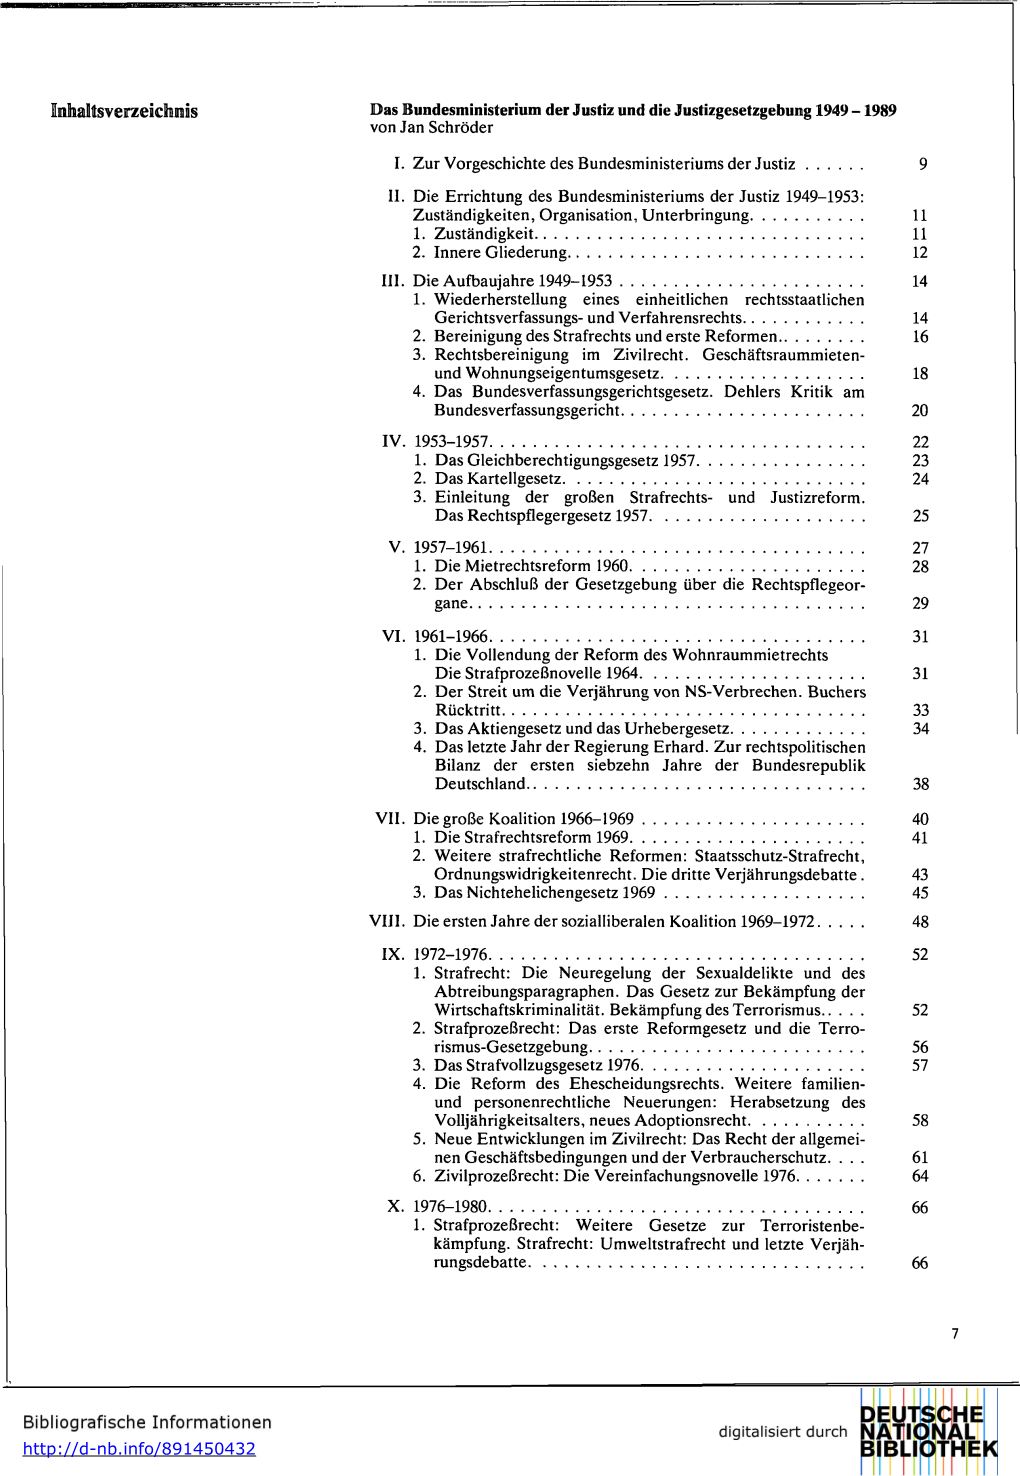 Inhaltsverzeichnis Das Bundesministerium Der Justiz Und Die Justizgesetzgebung 1949 -1989 Von Jan Schröder